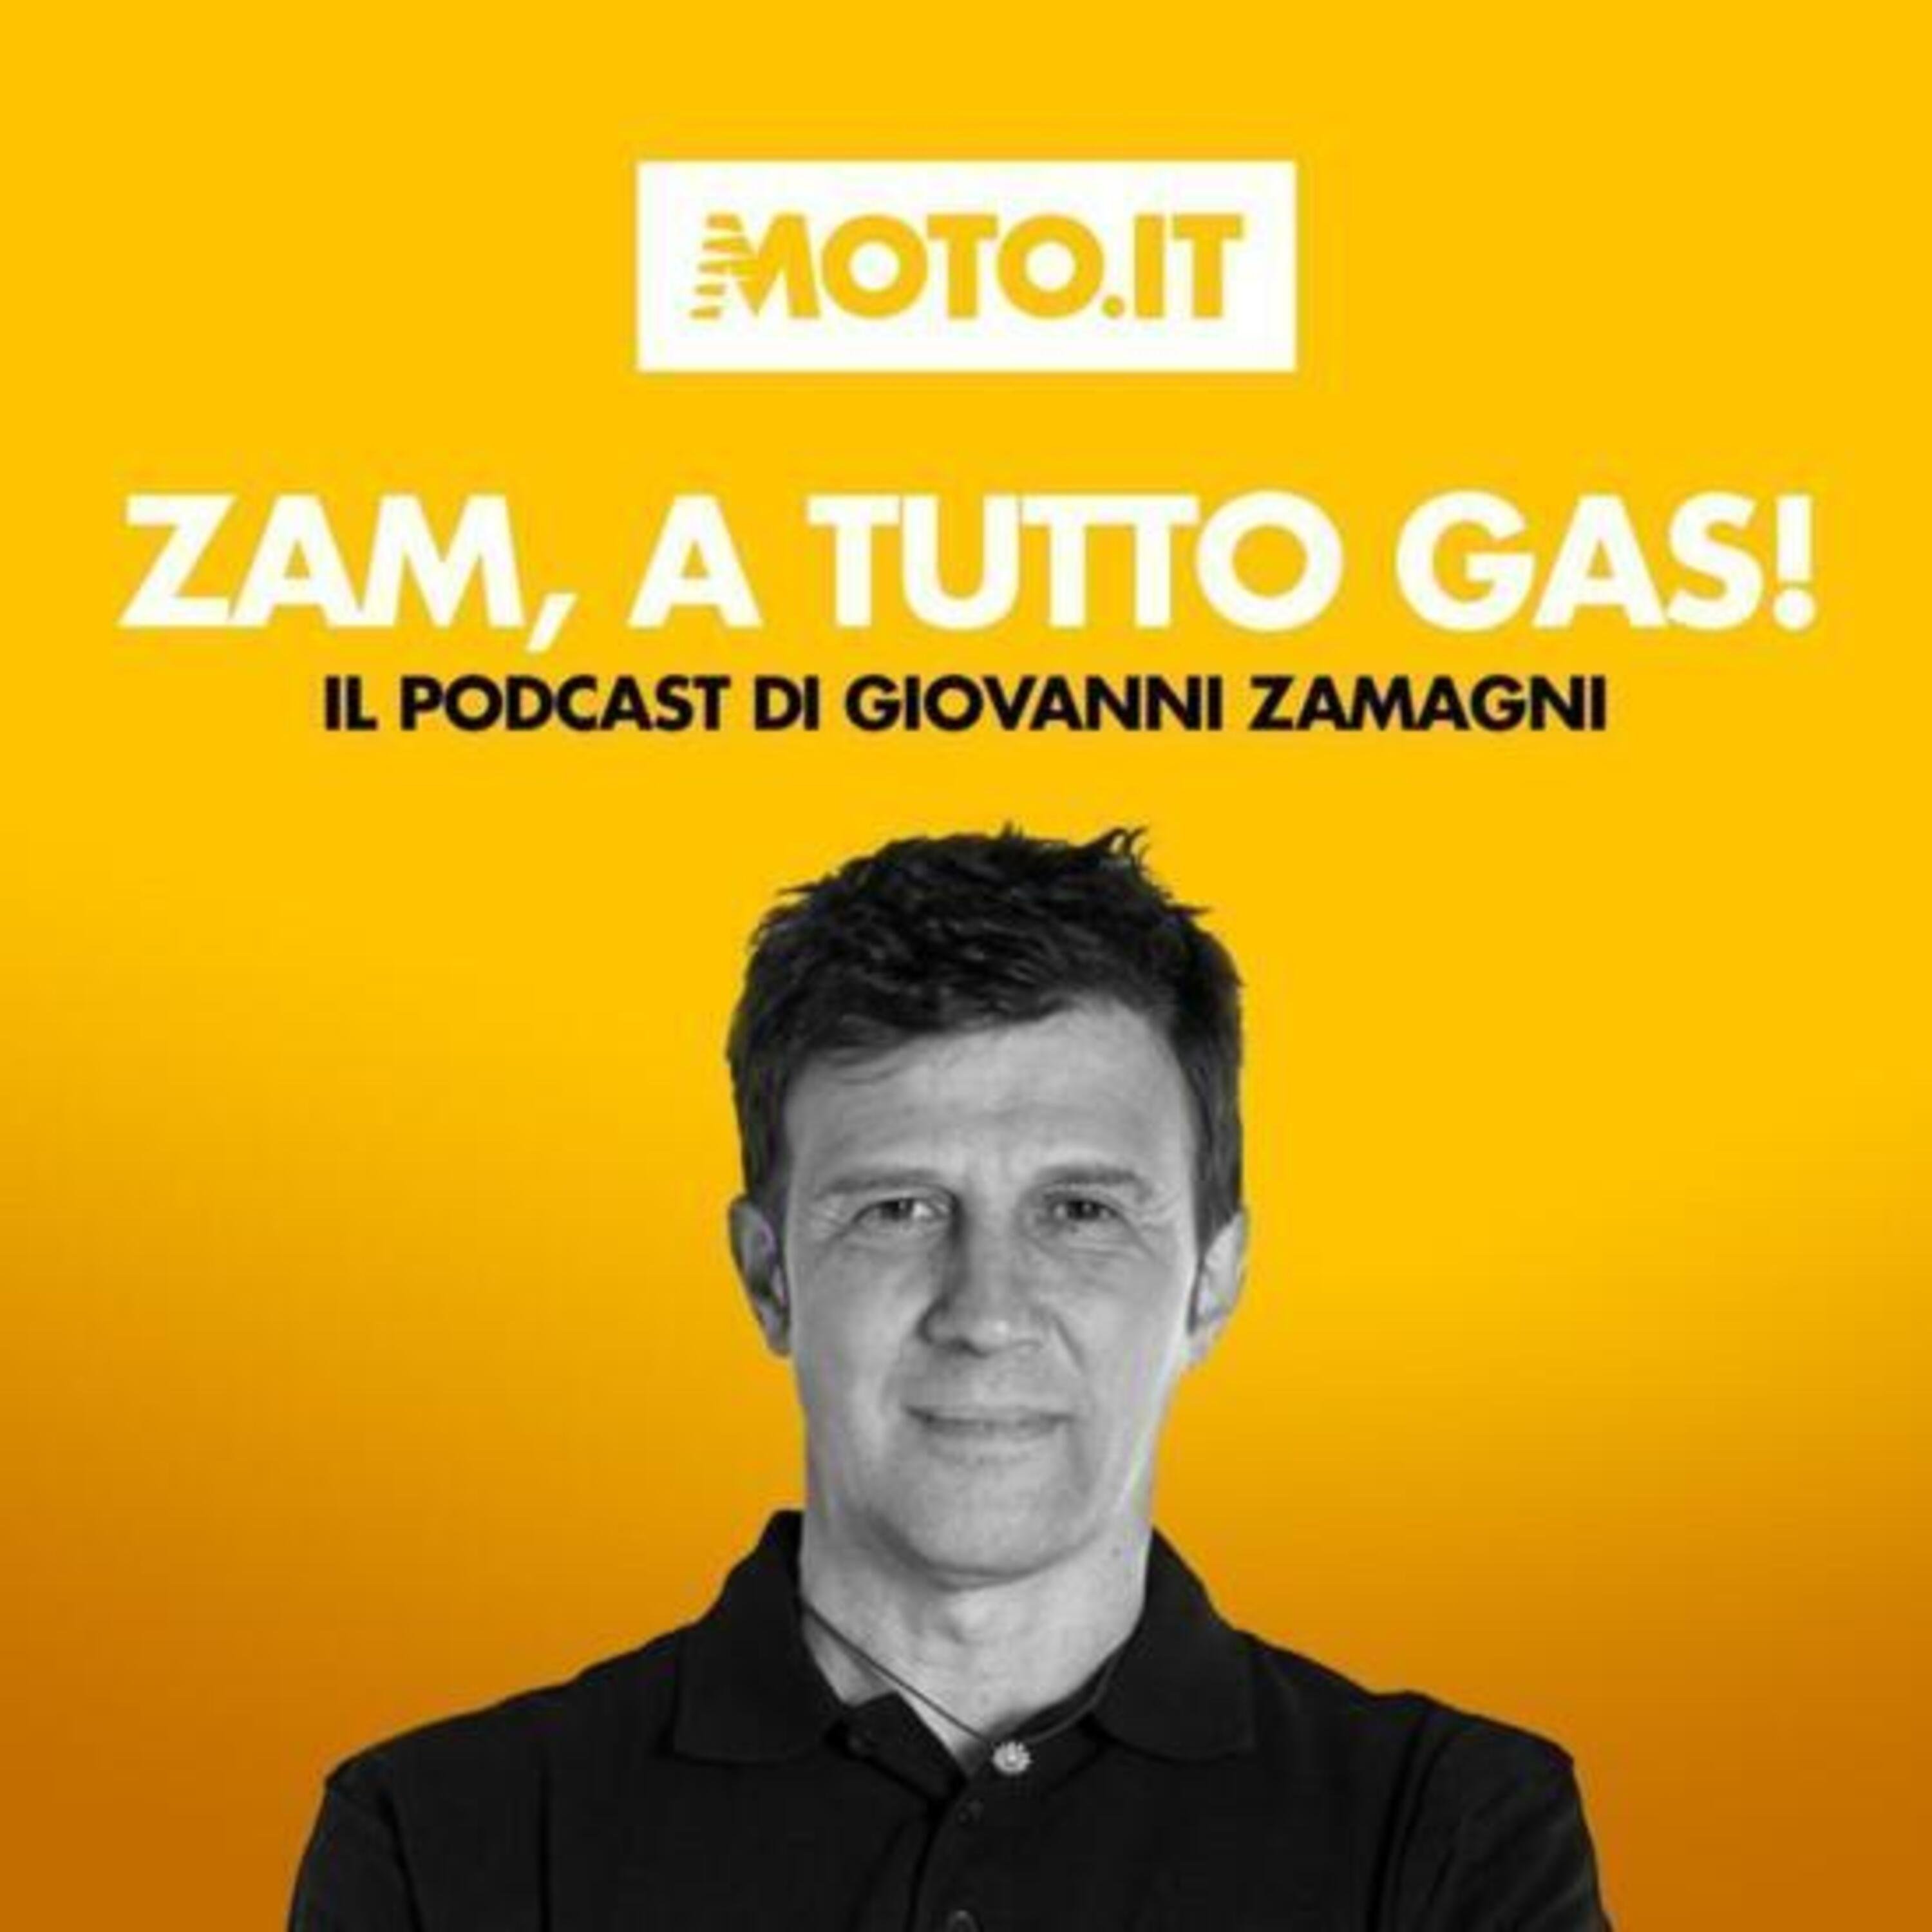 Zam, a tutto gas! Il Podcast di domenica 18